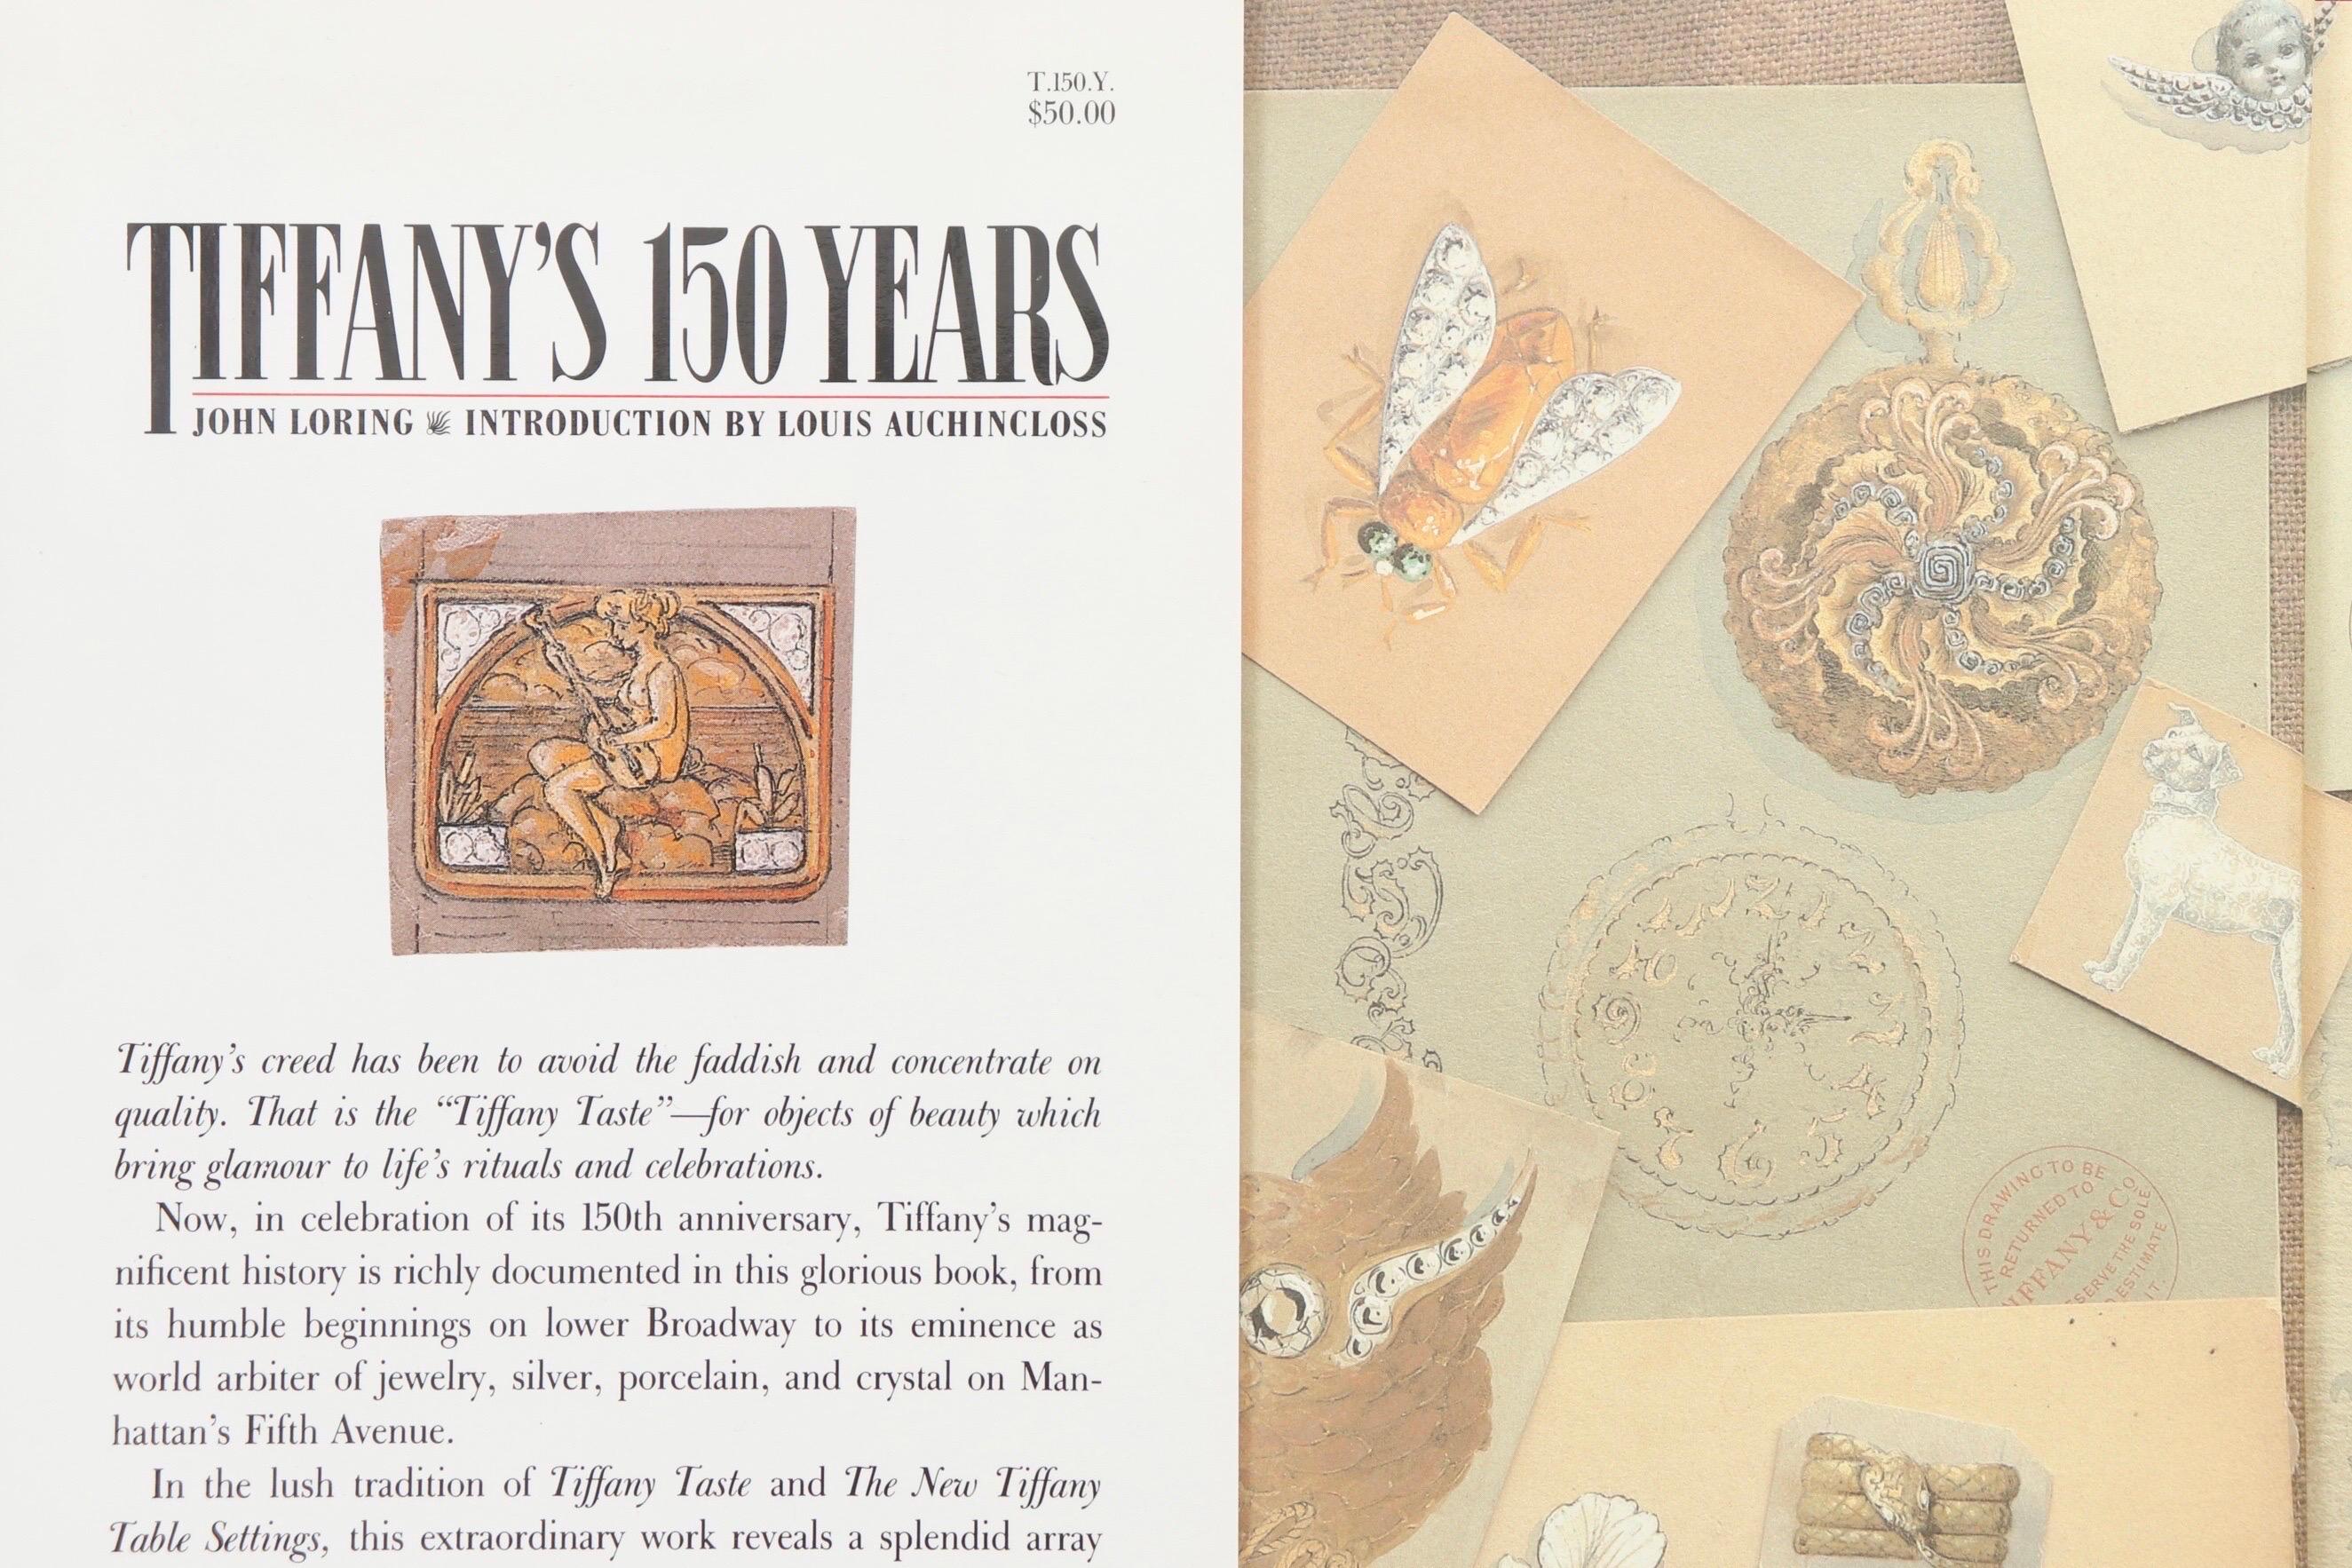 Les 150 ans de Tiffany par John Loring. Première édition, publiée en 1987 par Doubleday & Company Inc. de Garden City, New York. Couverture rigide avec jaquette, 192 pages.
